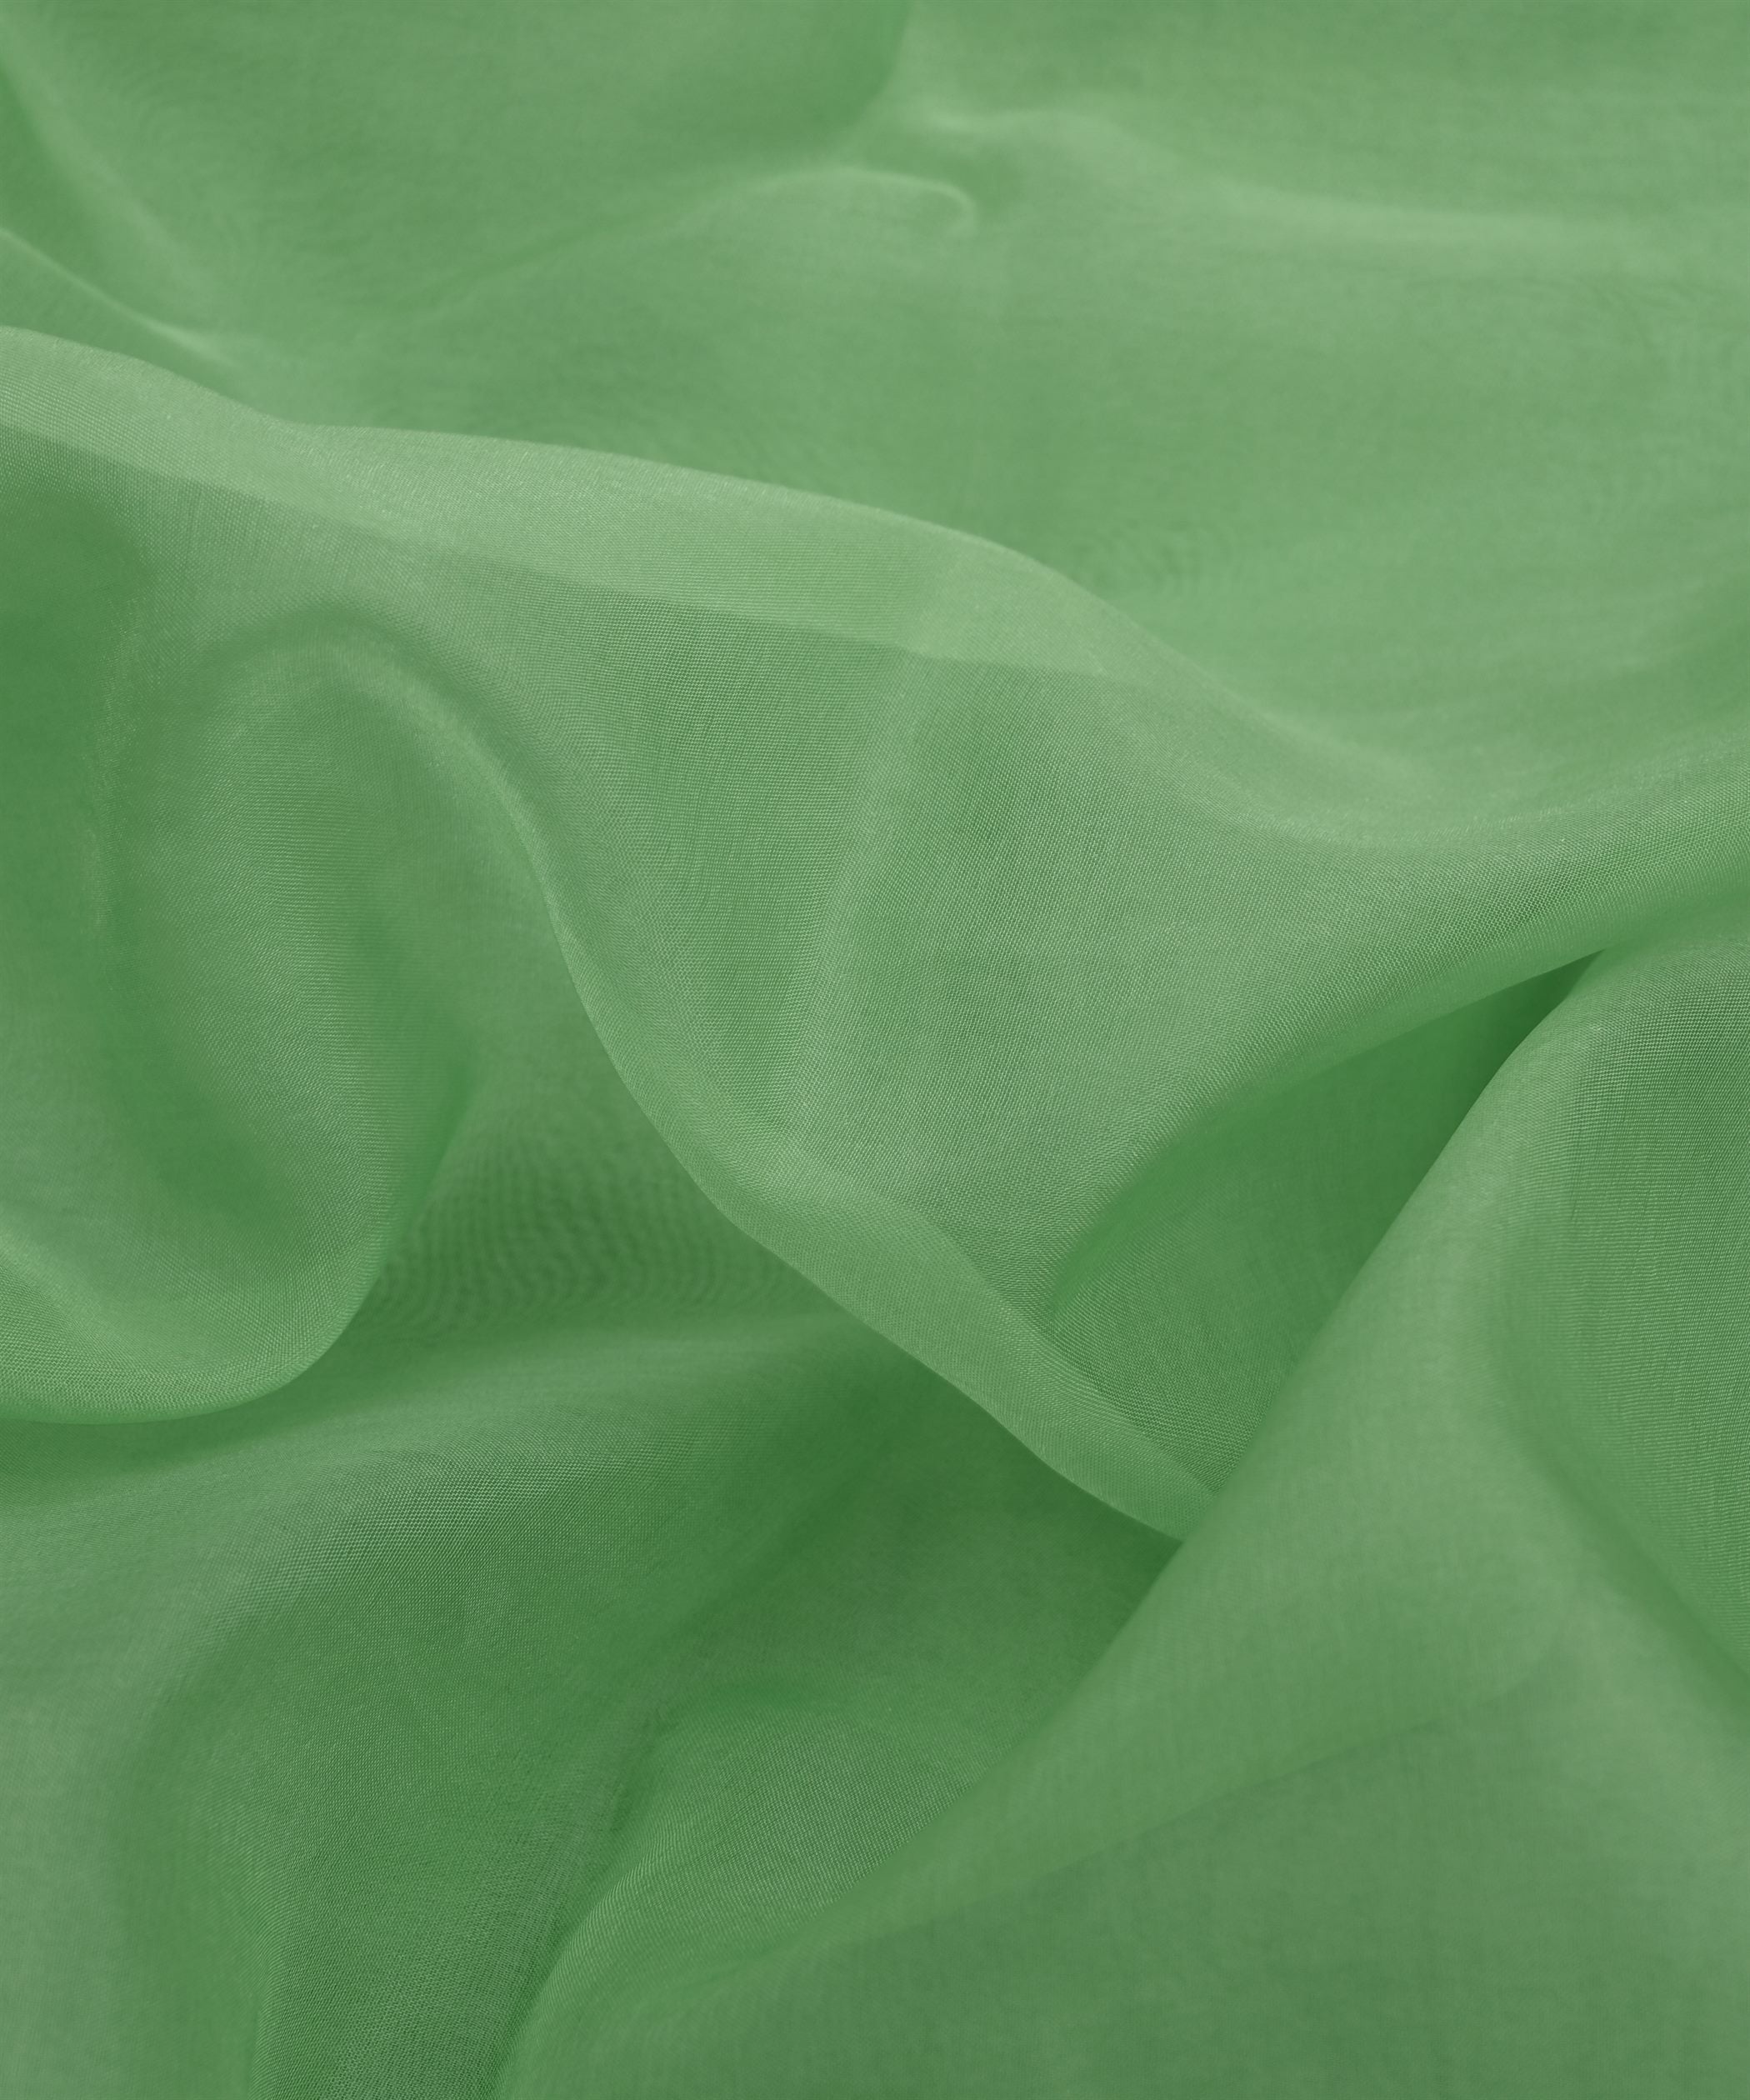 Fern Green Plain Dyed Organza Fabric